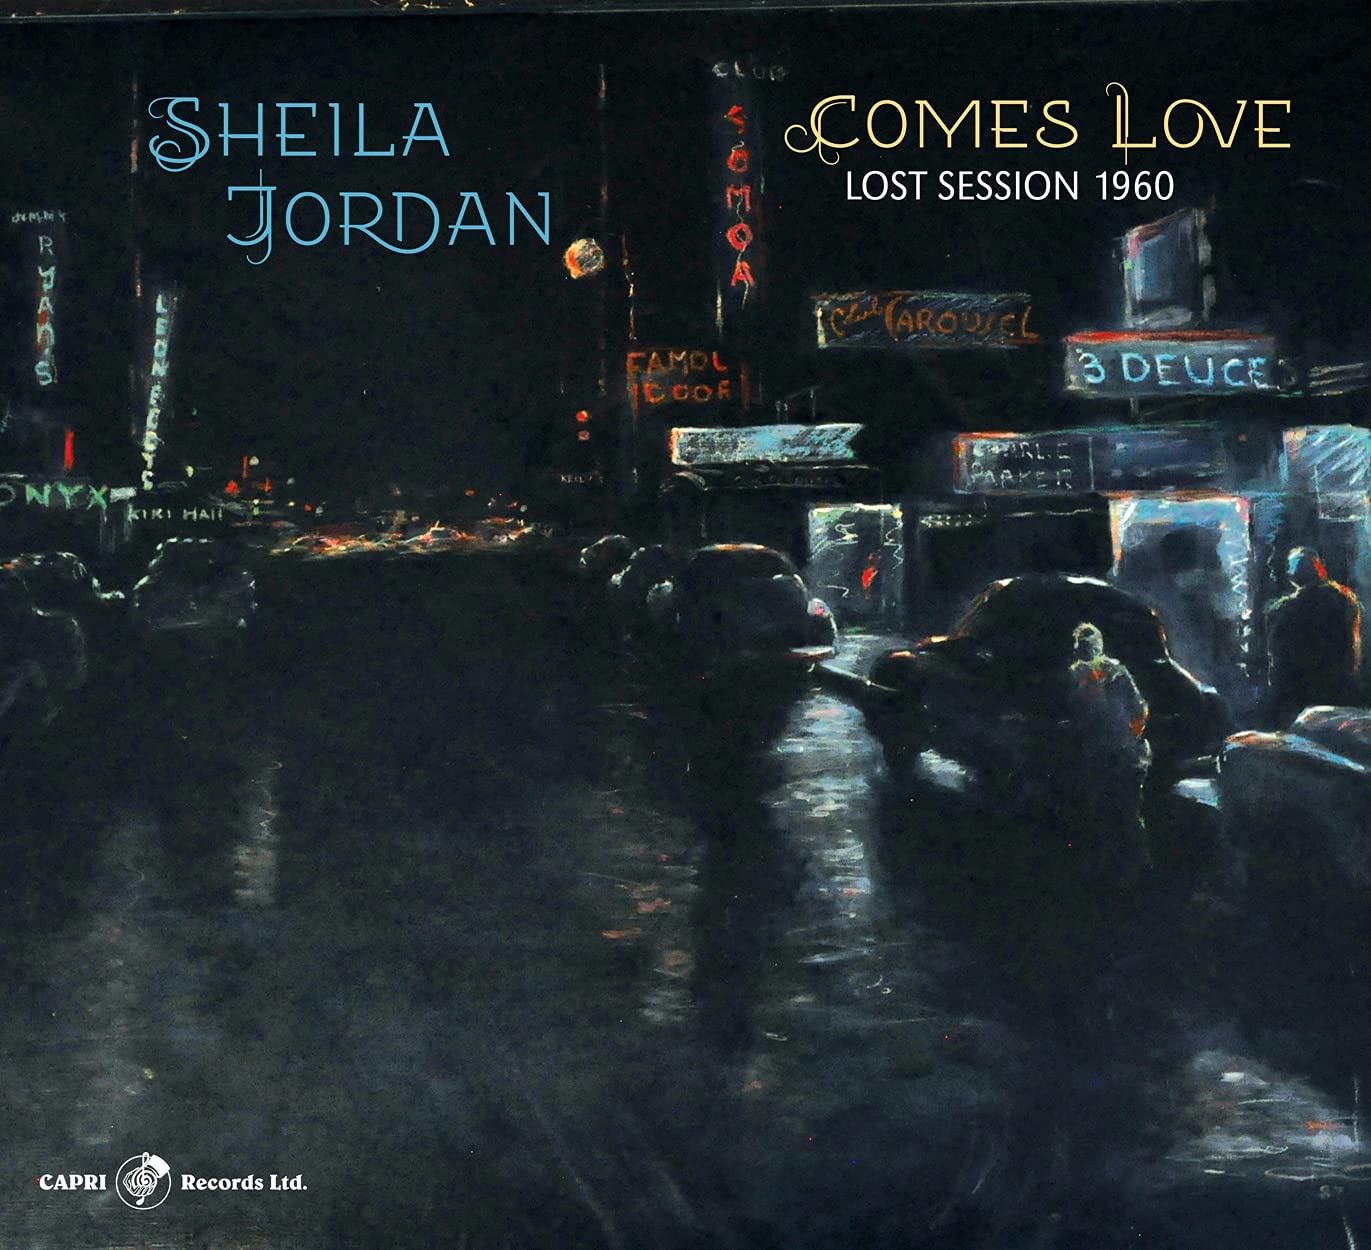 SHEILA JORDAN - Comes Love - Lost Session 1960 cover 